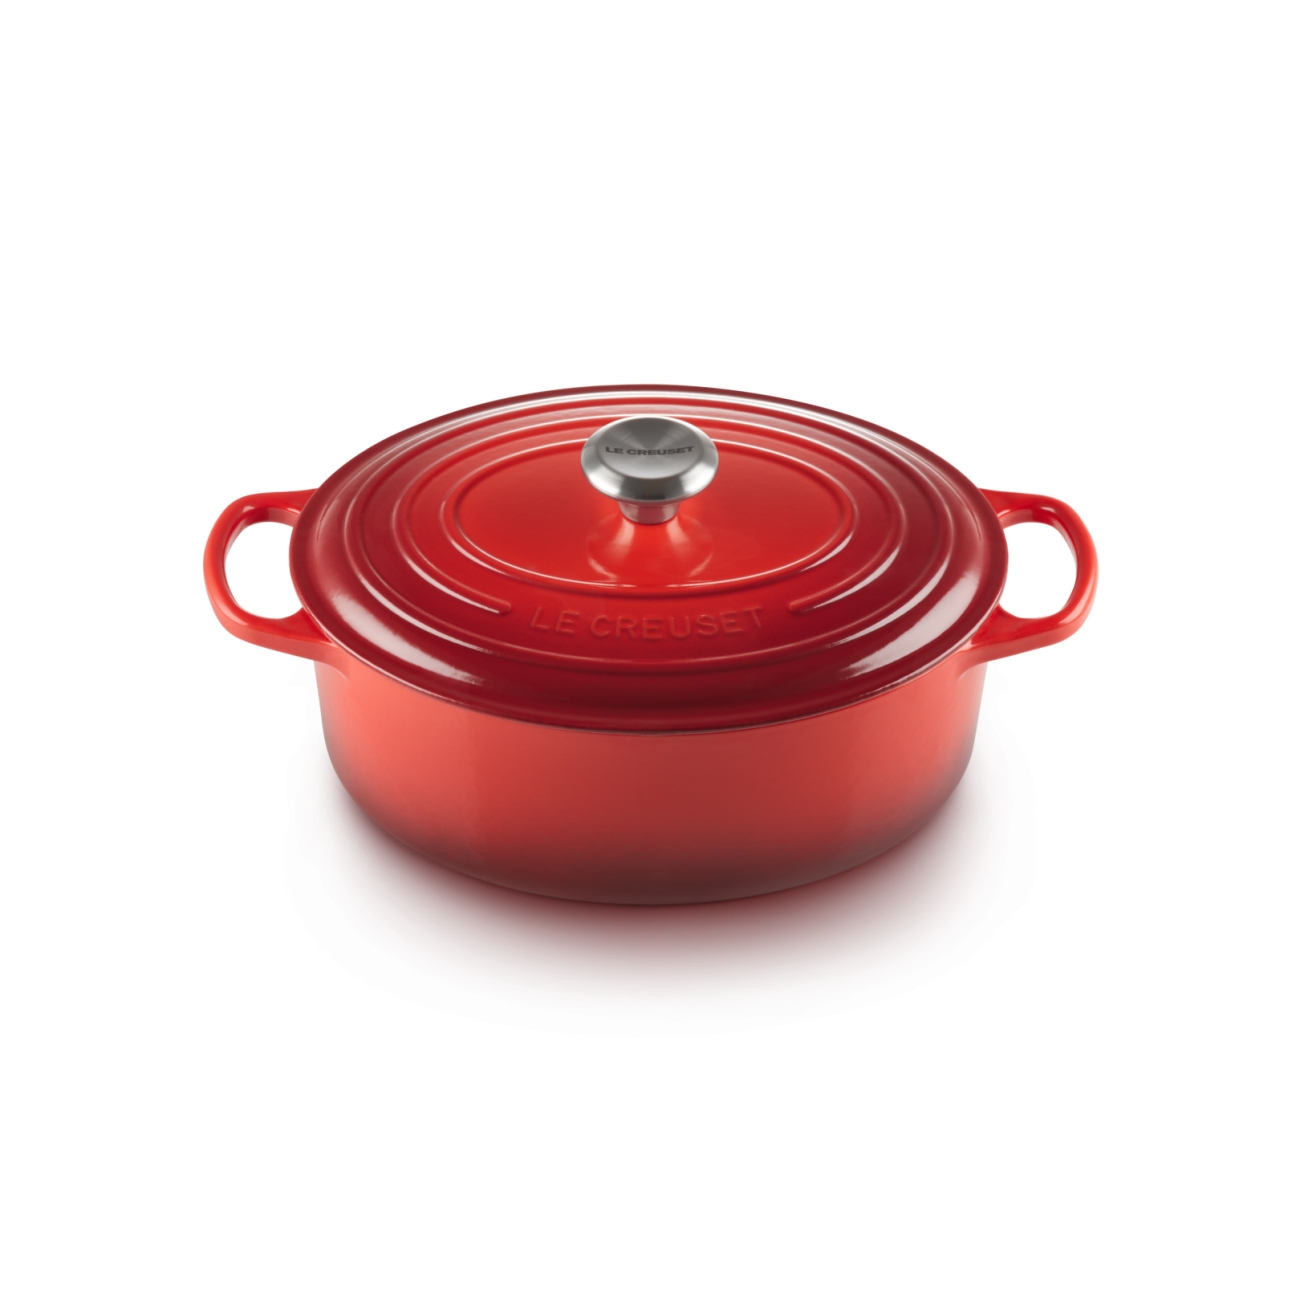 Le Creuset casserole-cocotte oval 27cm, 4,1 l red